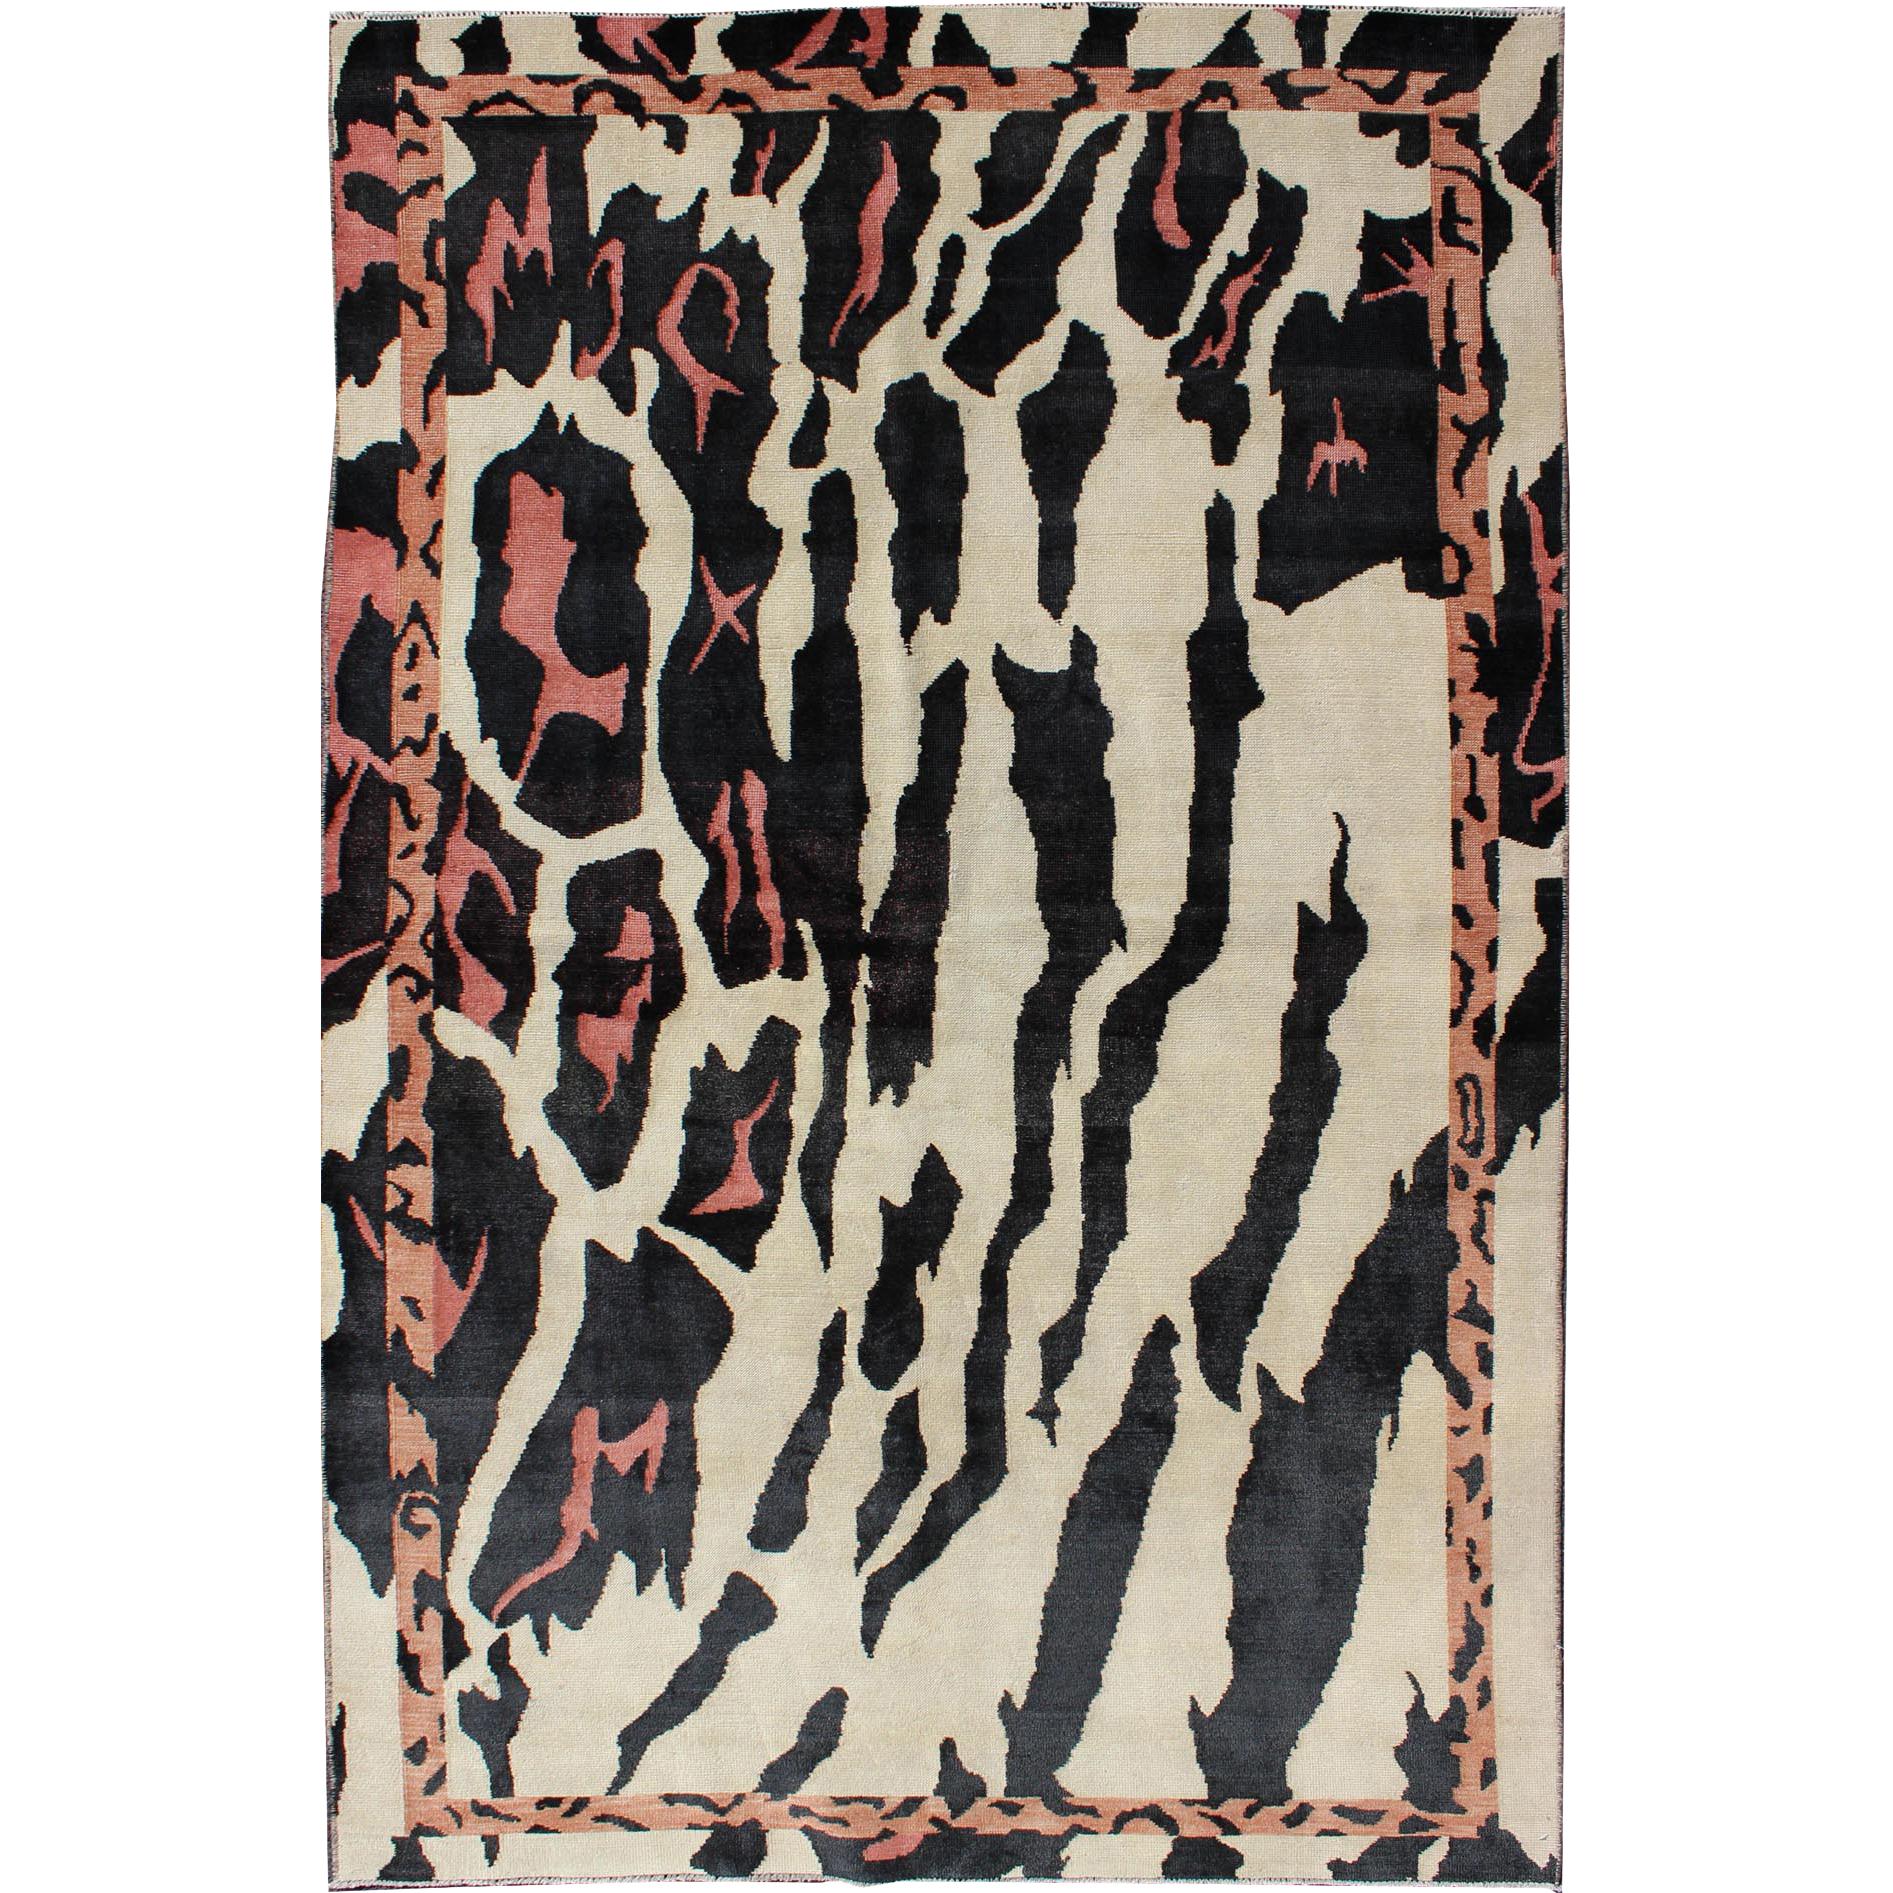 Unique Mid-Century Modern Rug with Zebra Skin Design in Black, Cream & Pink